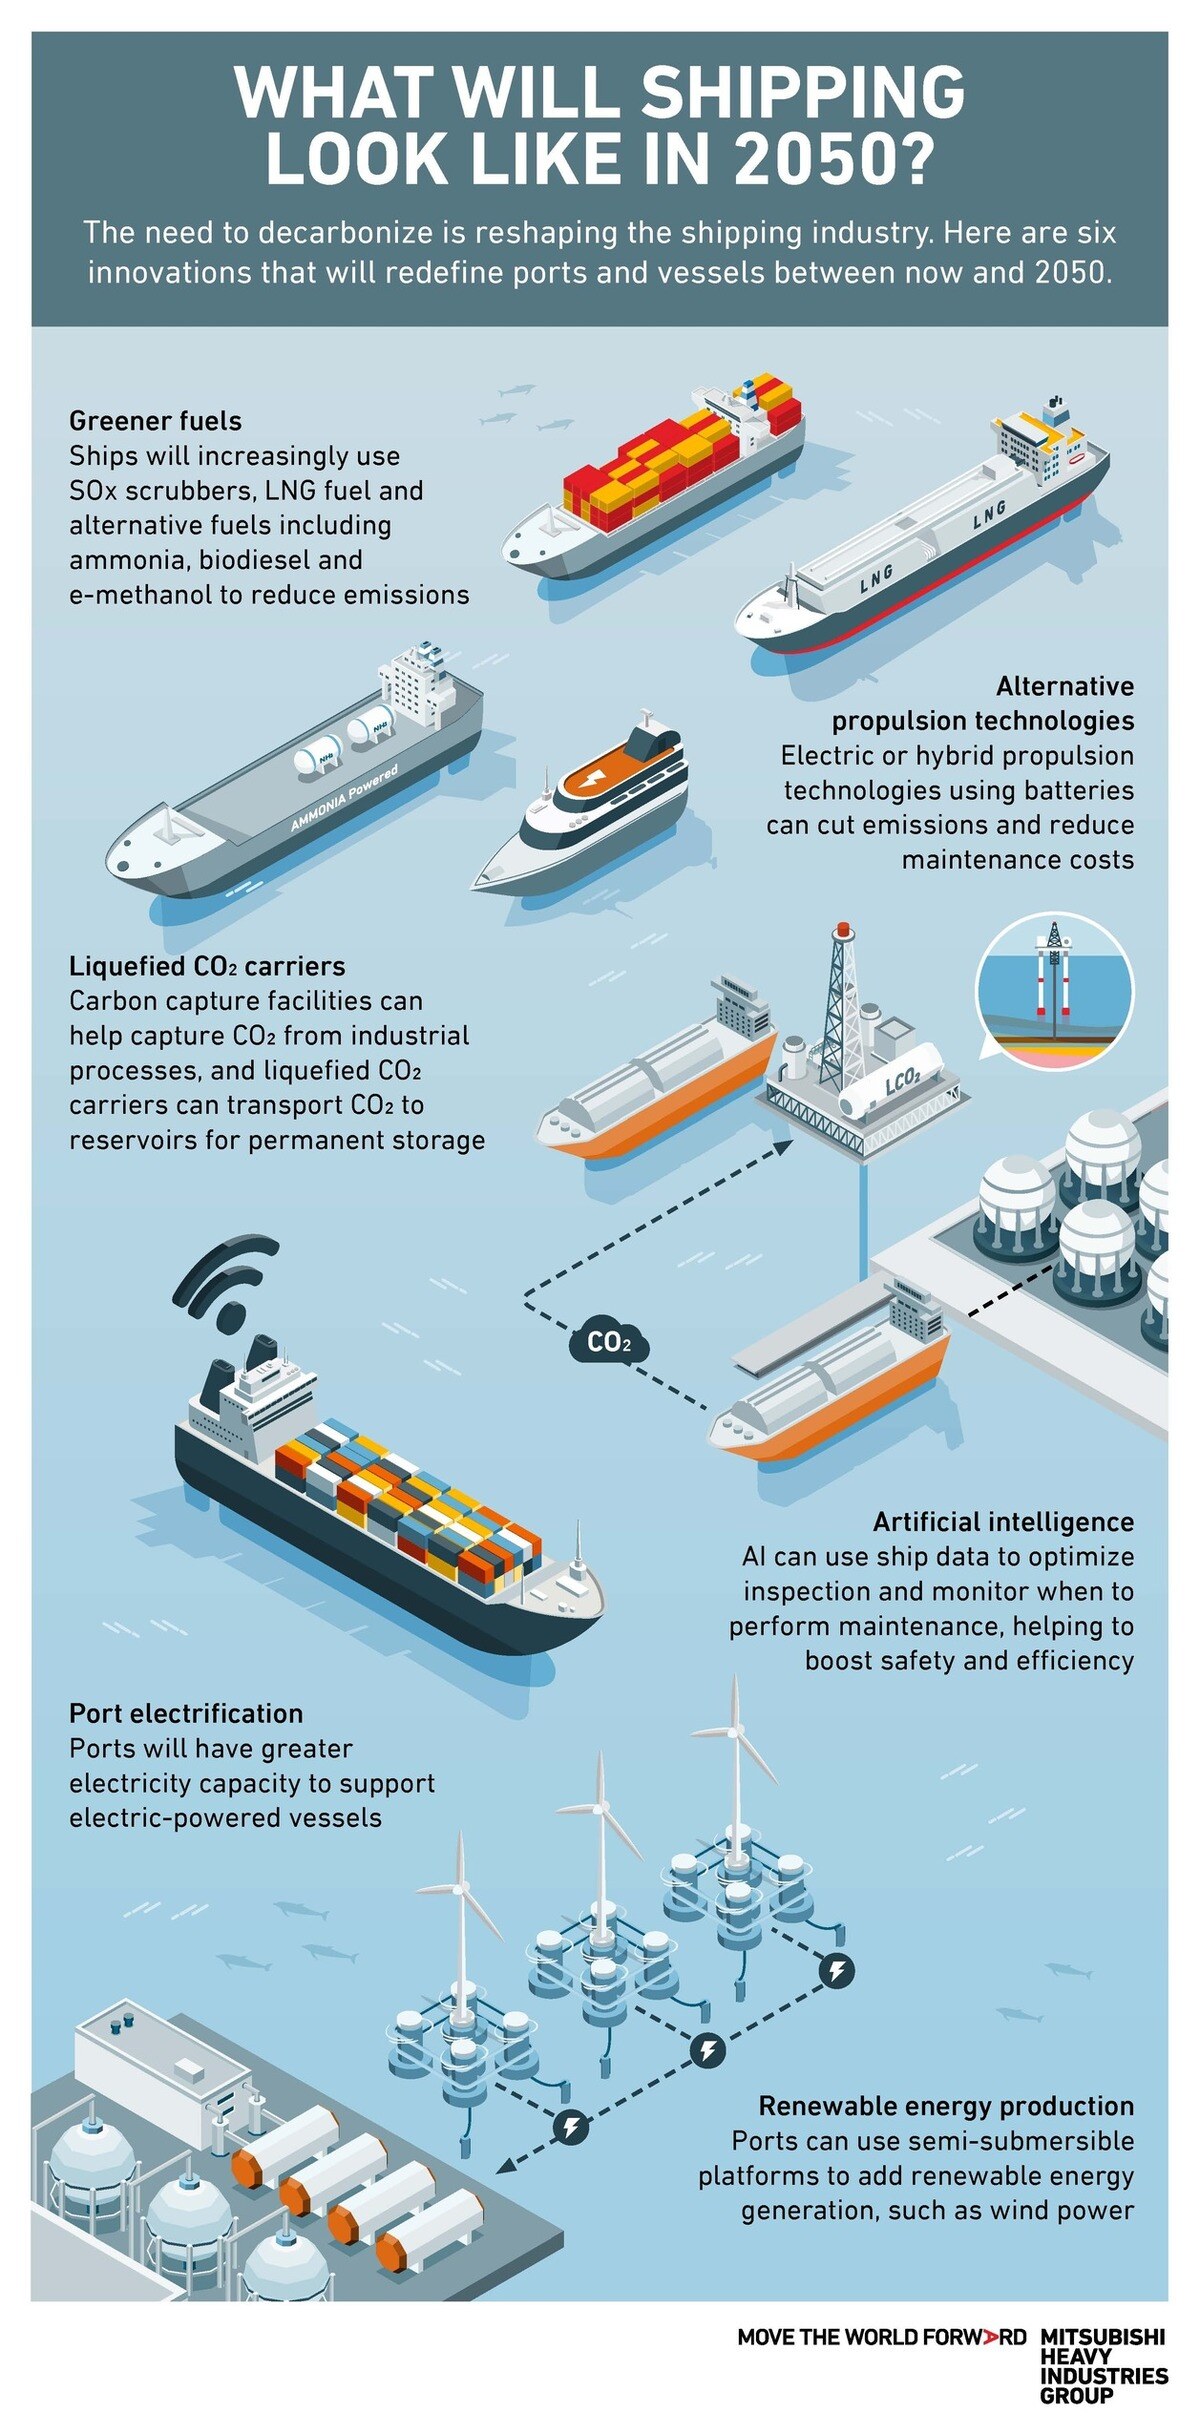 Từ nhiên liệu xanh hơn đến trí tuệ nhân tạo, một loạt công nghệ và cải tiến mới sẽ giúp vận tải biển theo kịp nhu cầu ngày càng tăng